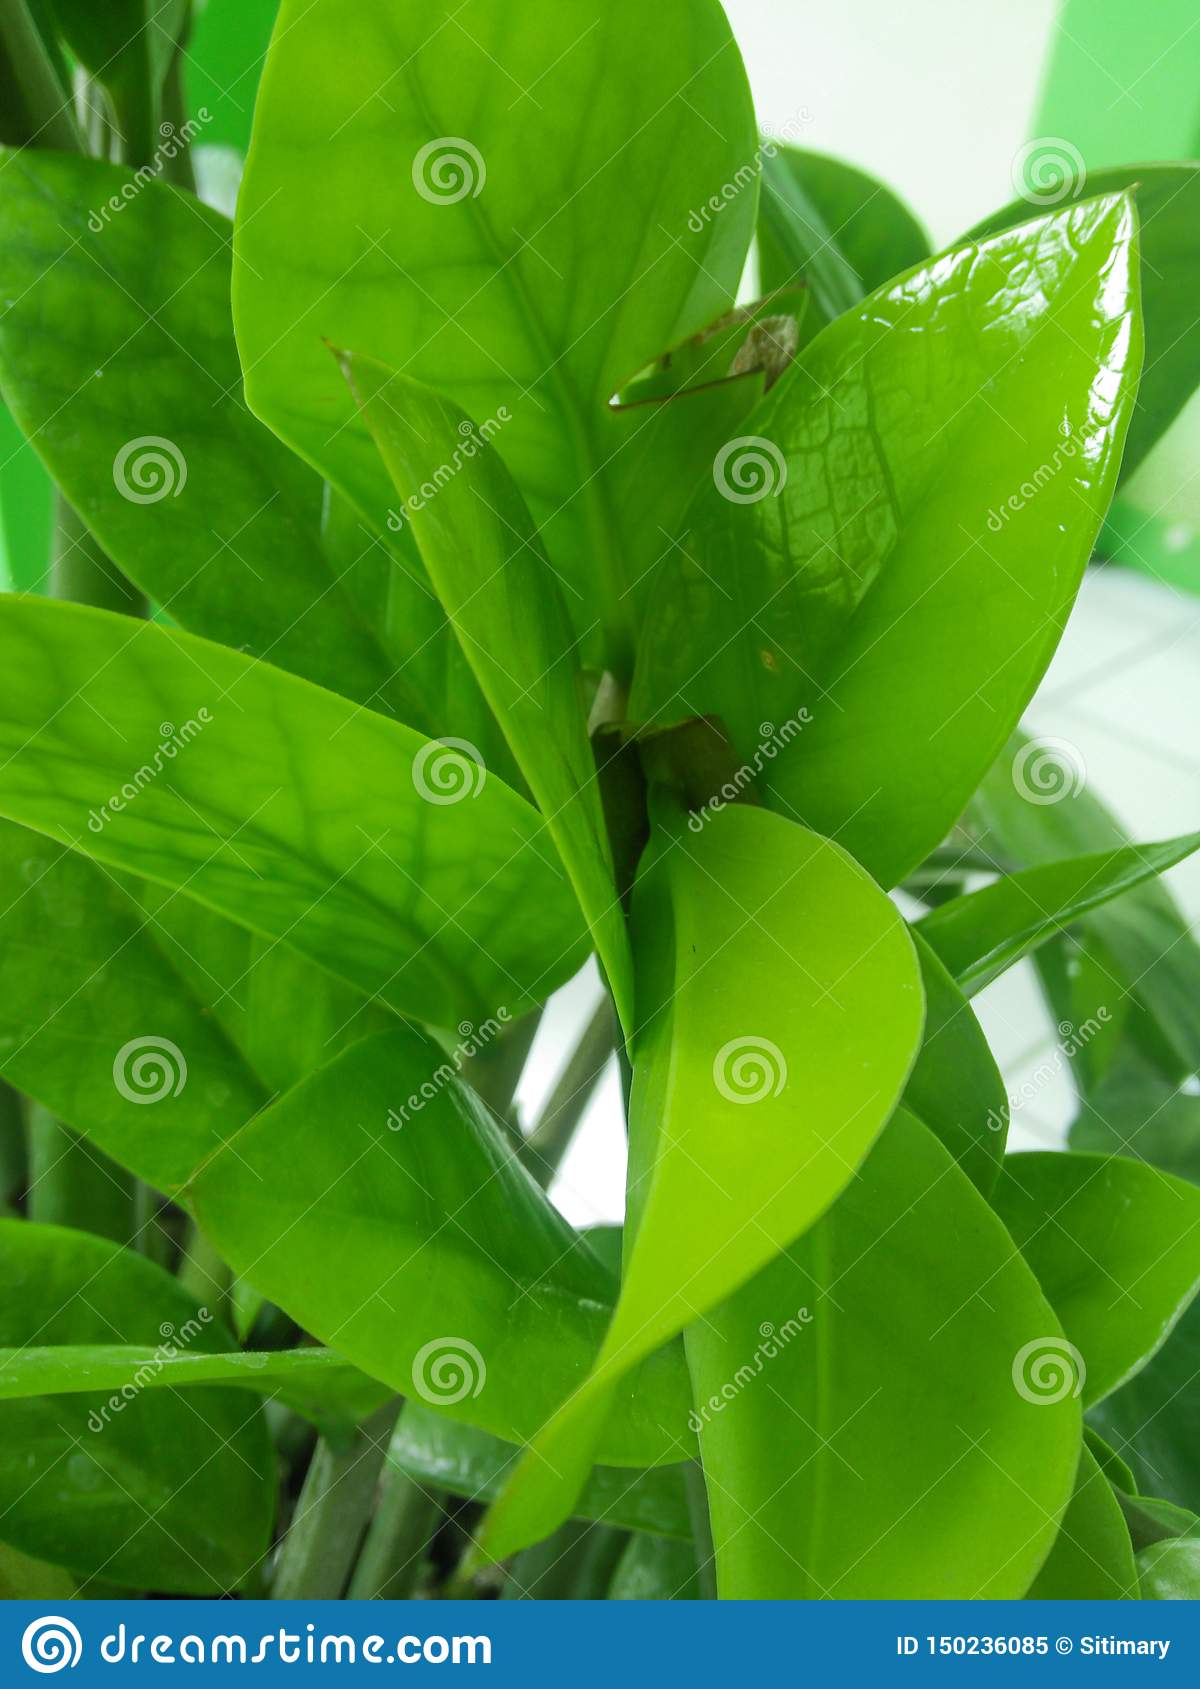 feuilles fra ches jardin collection fourmis arbre branche fraîche ressort vert été feuille tropical floral naturel image